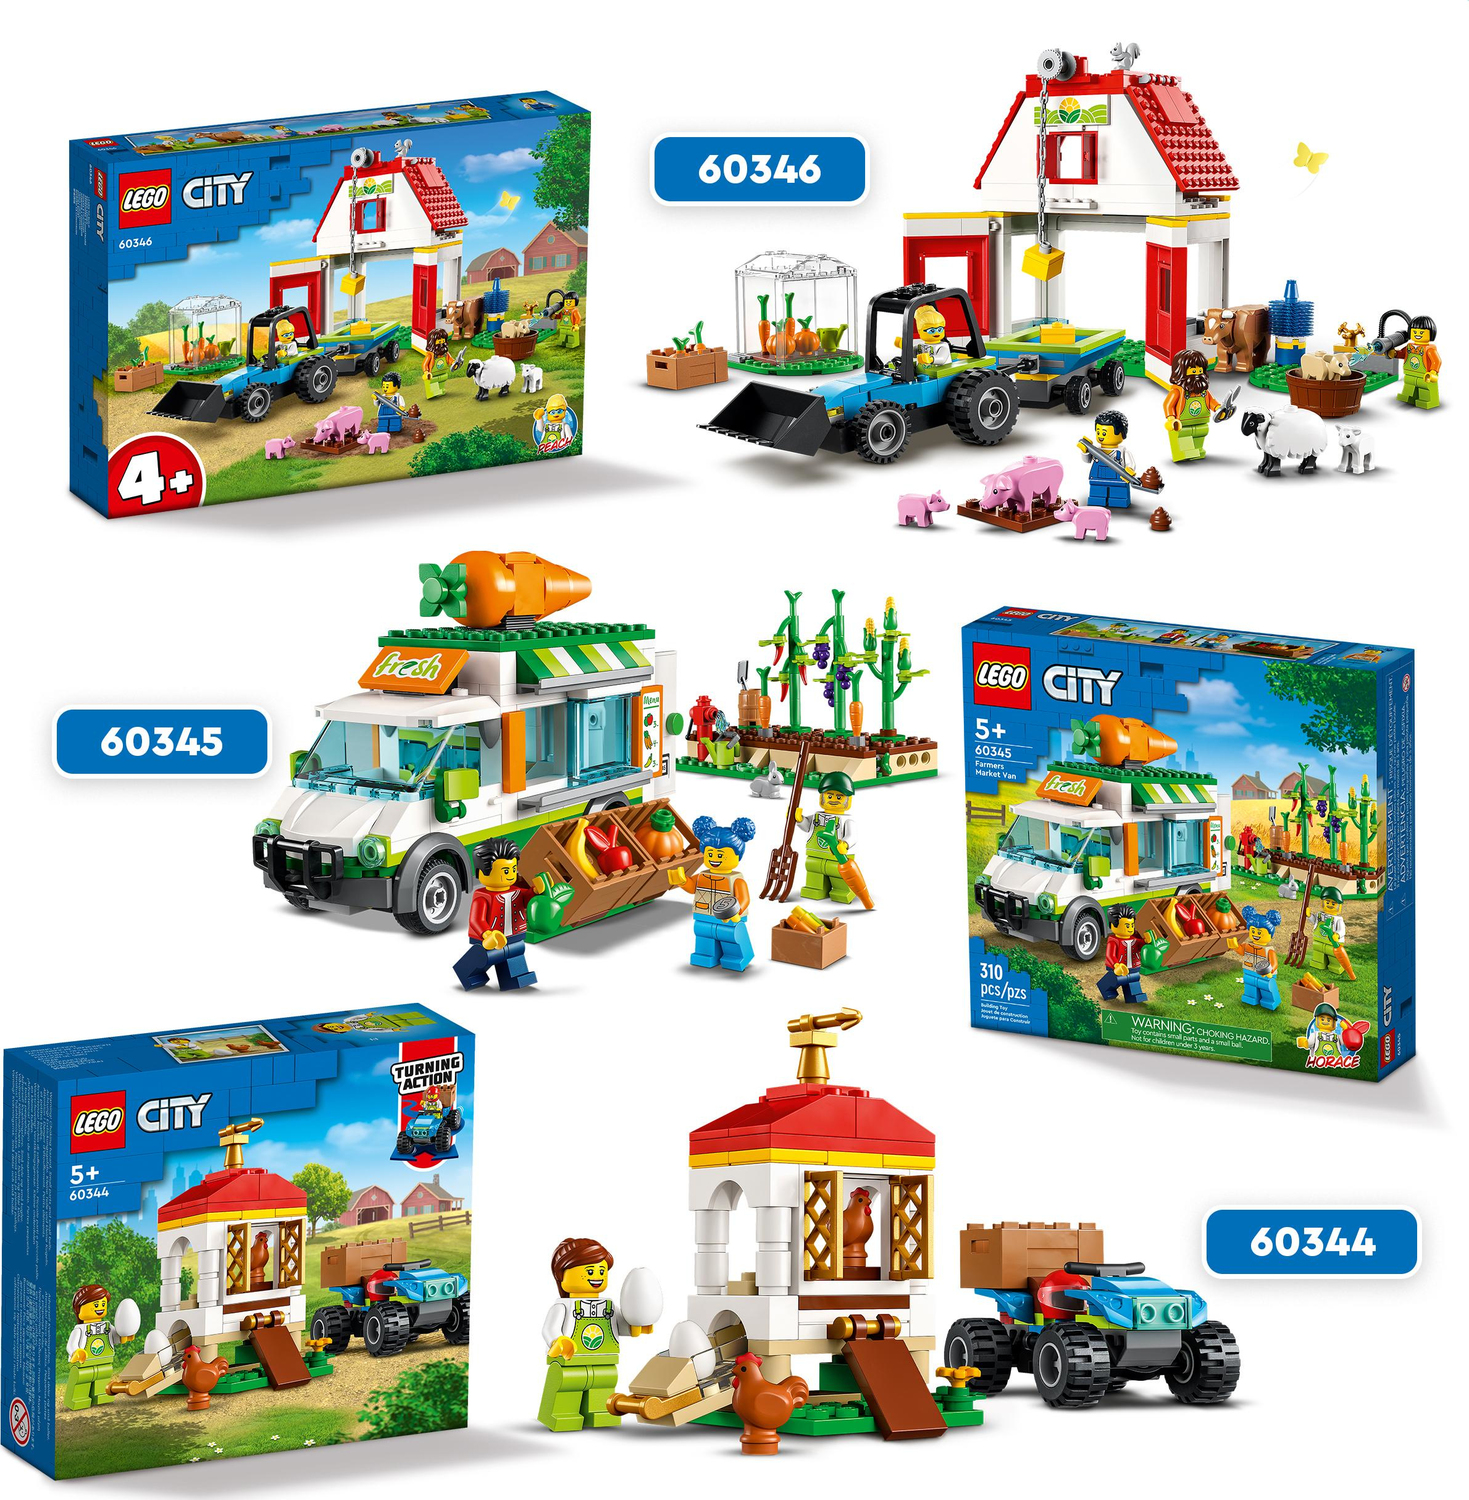 LEGO City Farm Barn & Farm Animals Toy Set